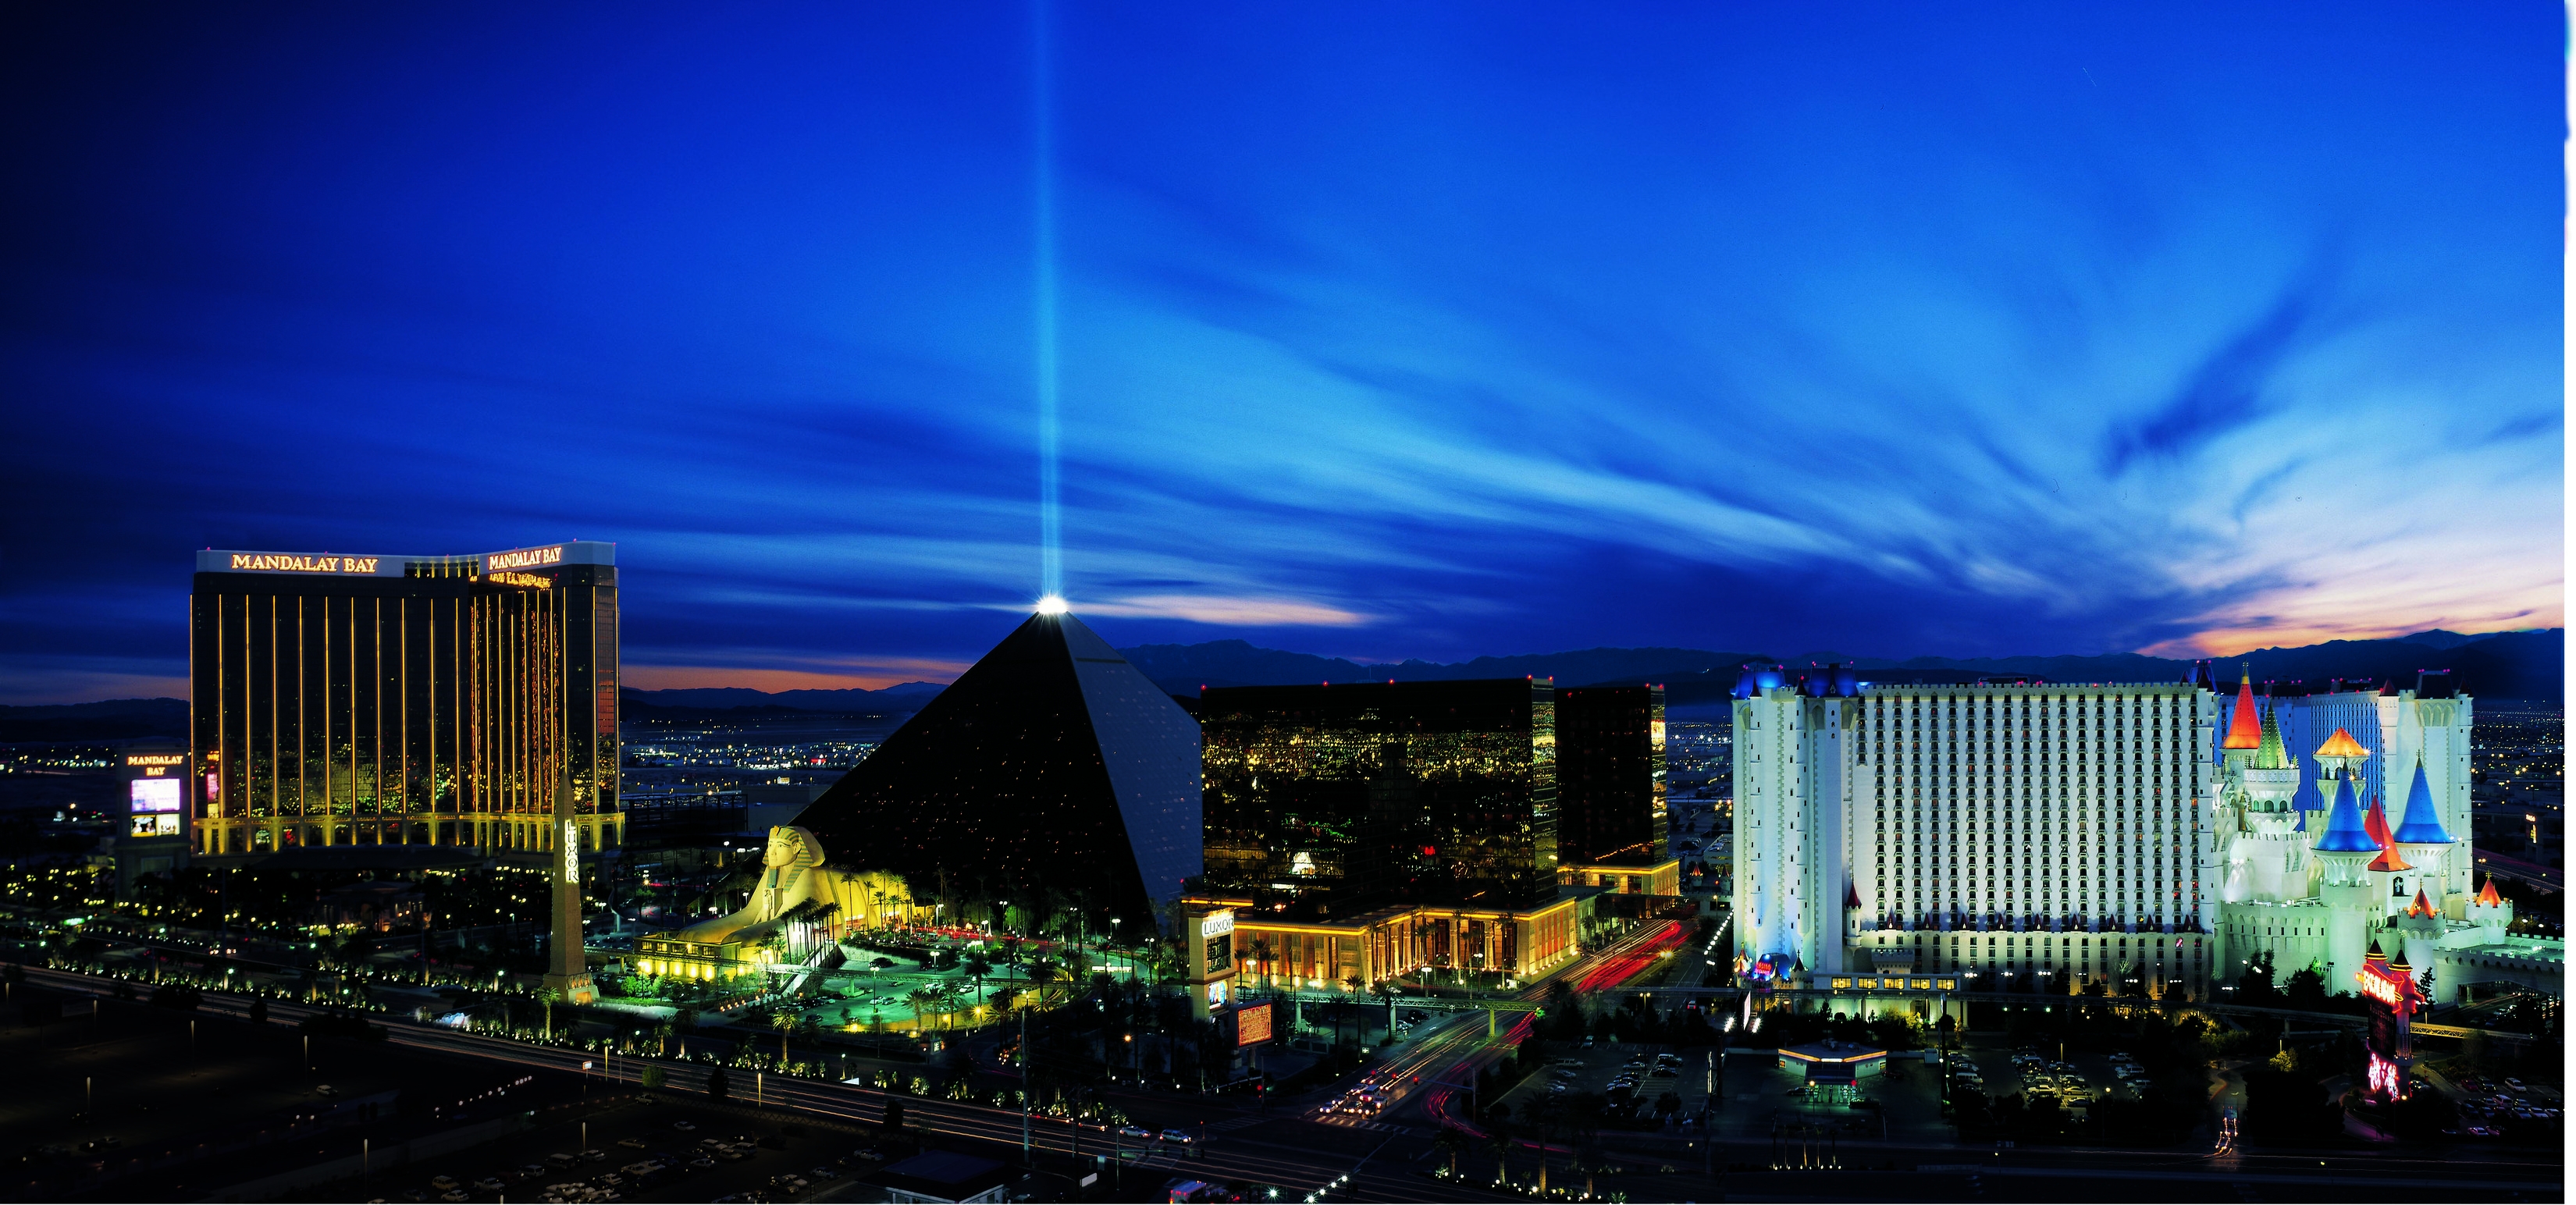 Luxor, Las Vegas – Updated 2023 Prices